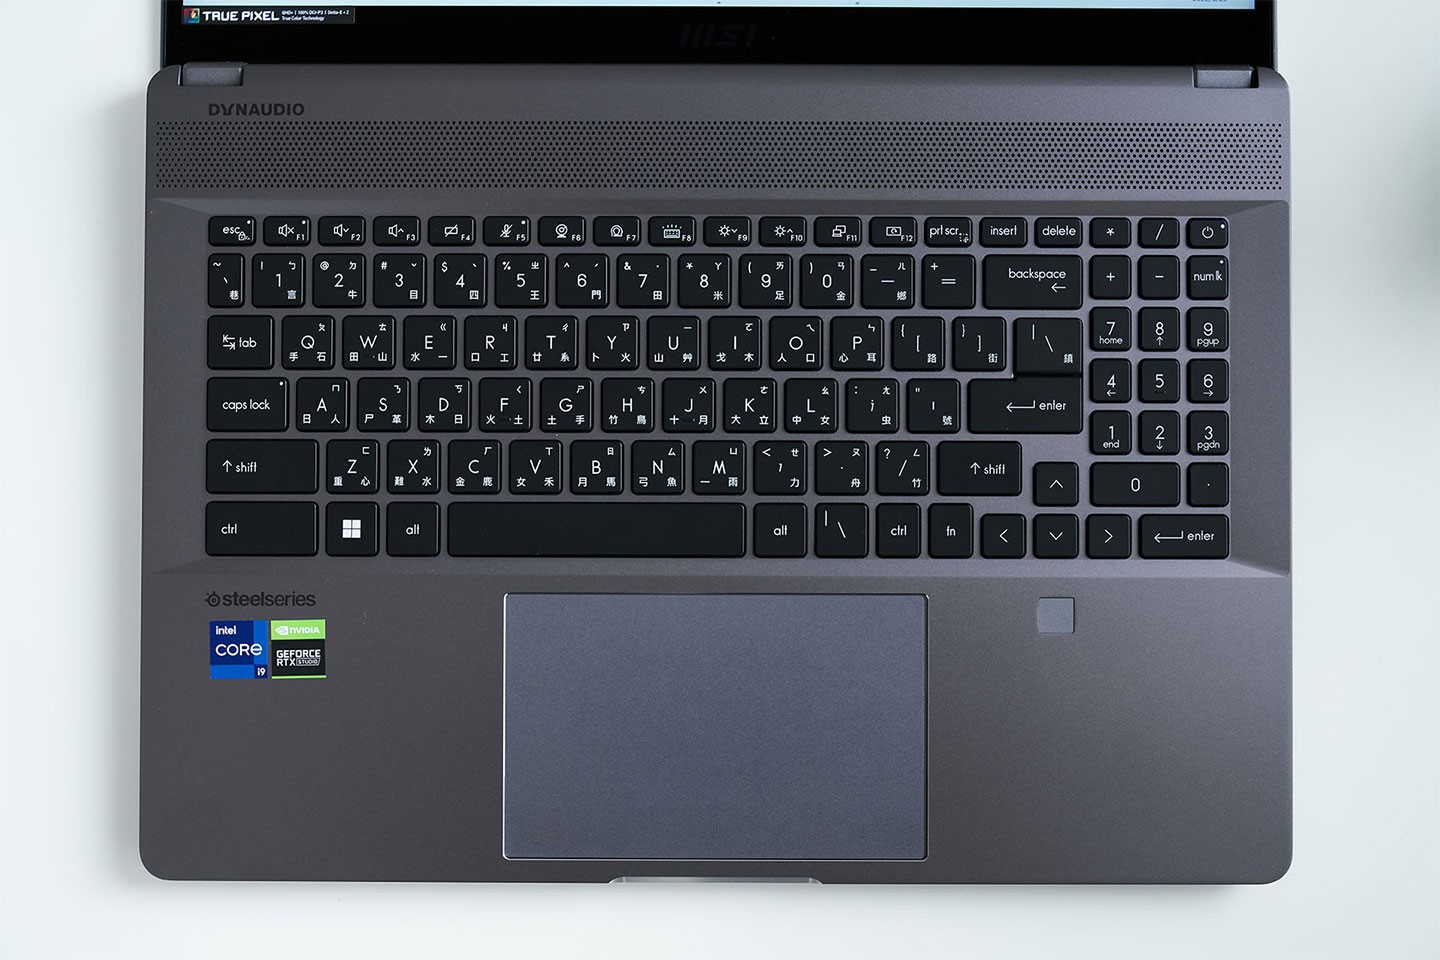 機身 C 面配置黑色鍵帽的島式鍵盤，採用1.5mm鍵程計，右側則有縮小版的九宮數鍵，能快速輸入數，提供創作者更舒適的工作環境。